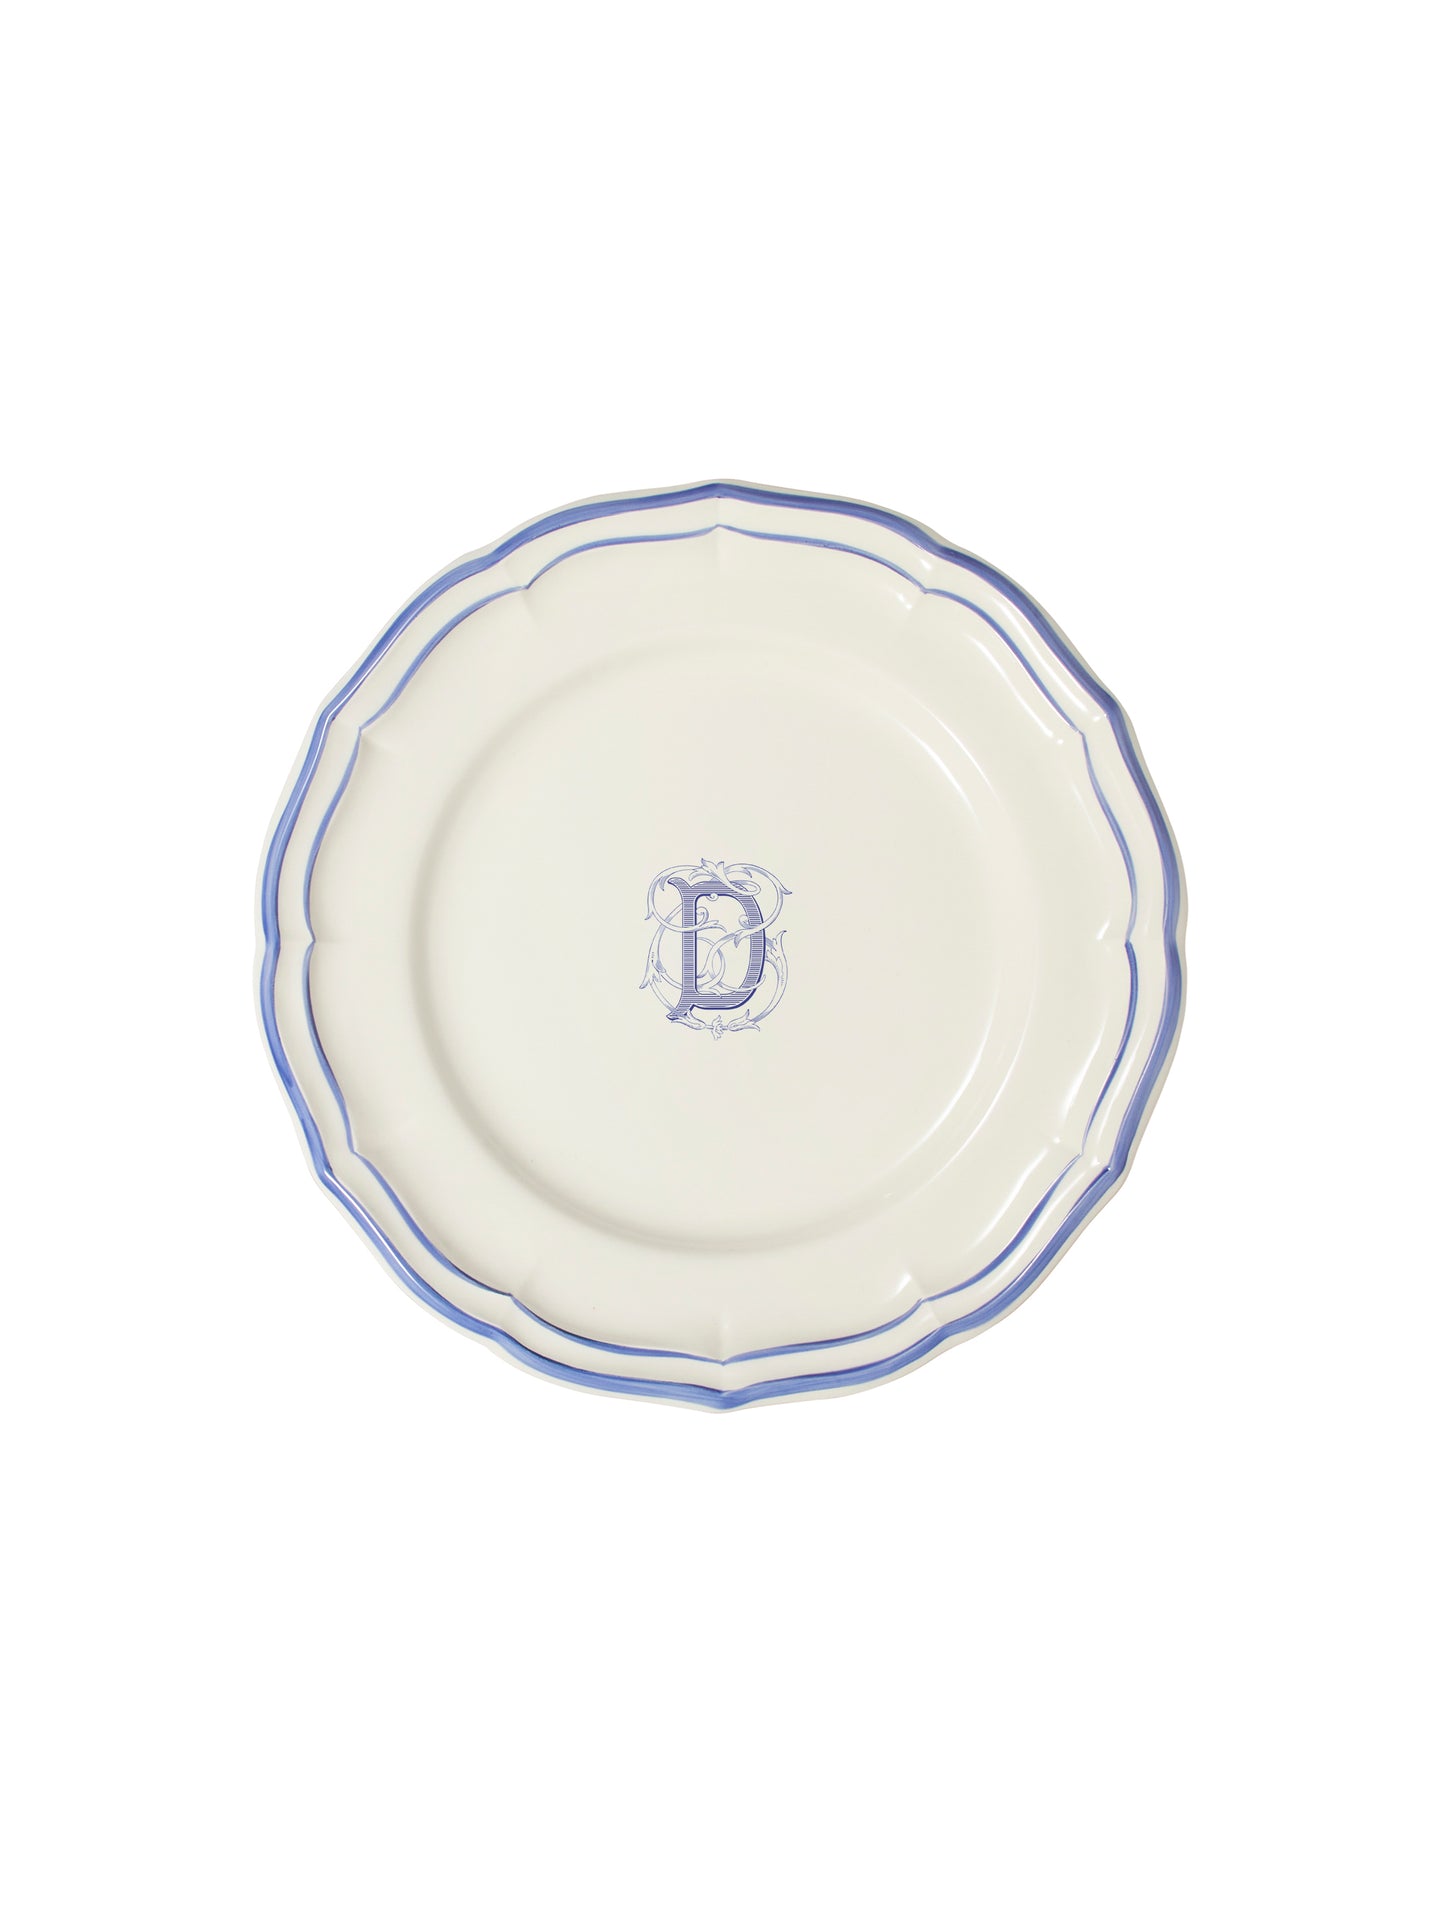 Gien Filet Bleu Monogram Salad Plate D Weston Table